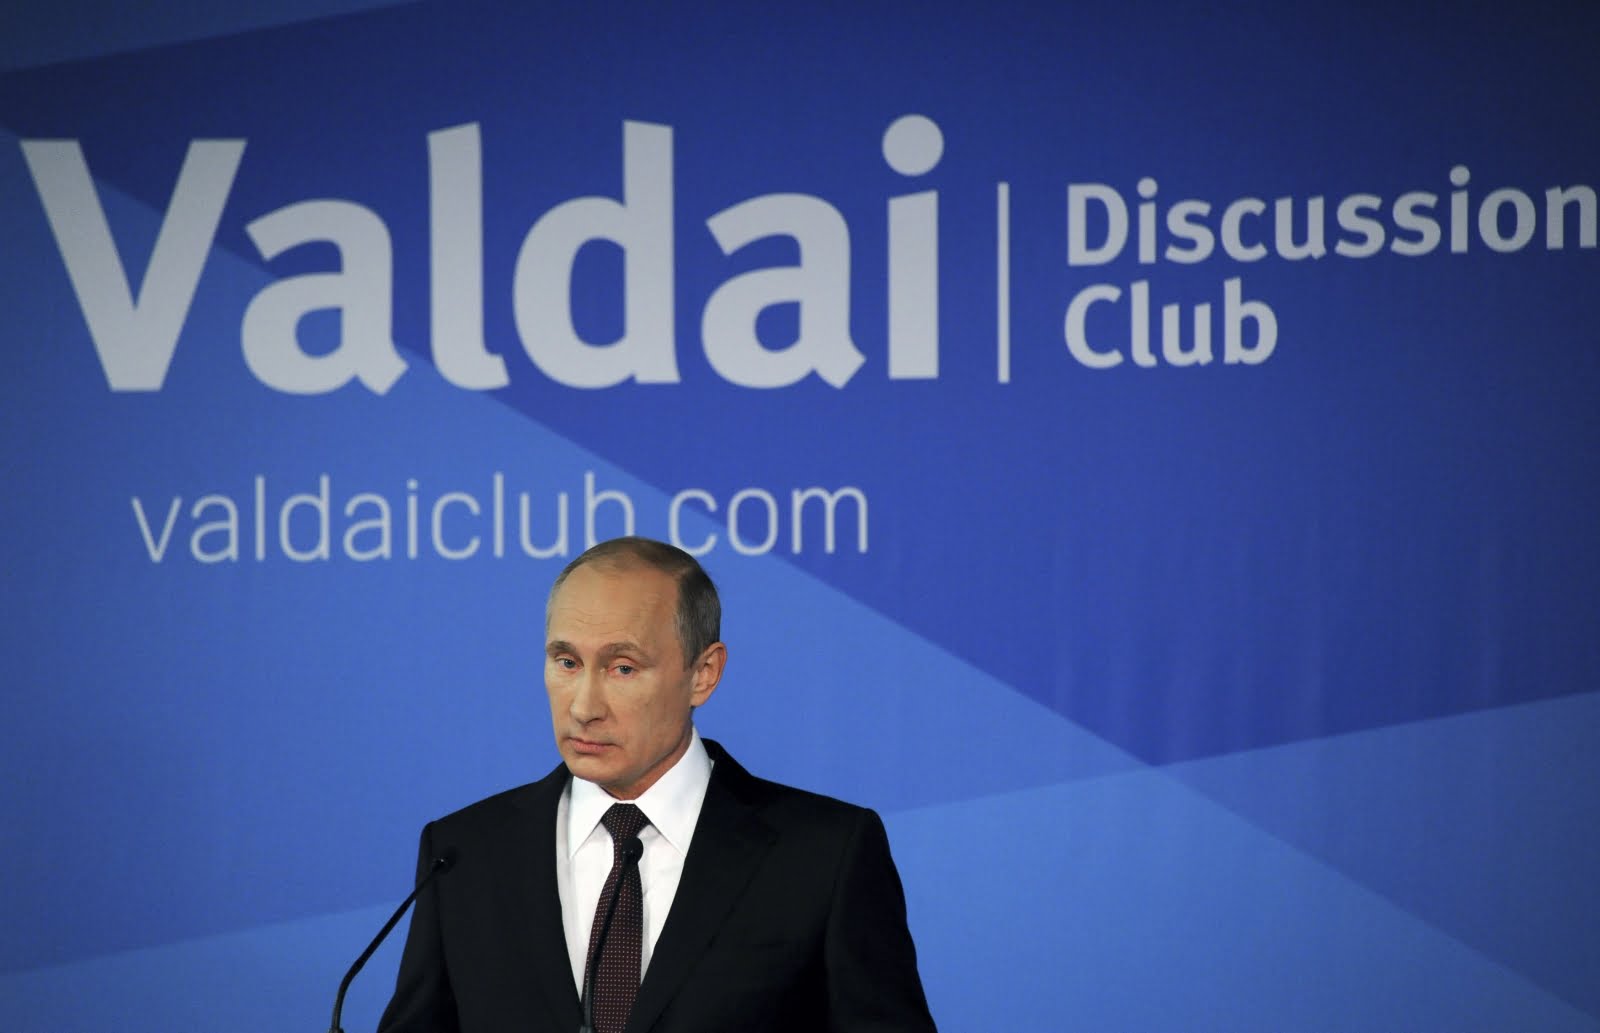 Η ομιλία του Ρώσου Προέδρου Βλ. Πούτιν στη Λέσχη Βαλντάι, στο Σόχι την 24-10-2014*